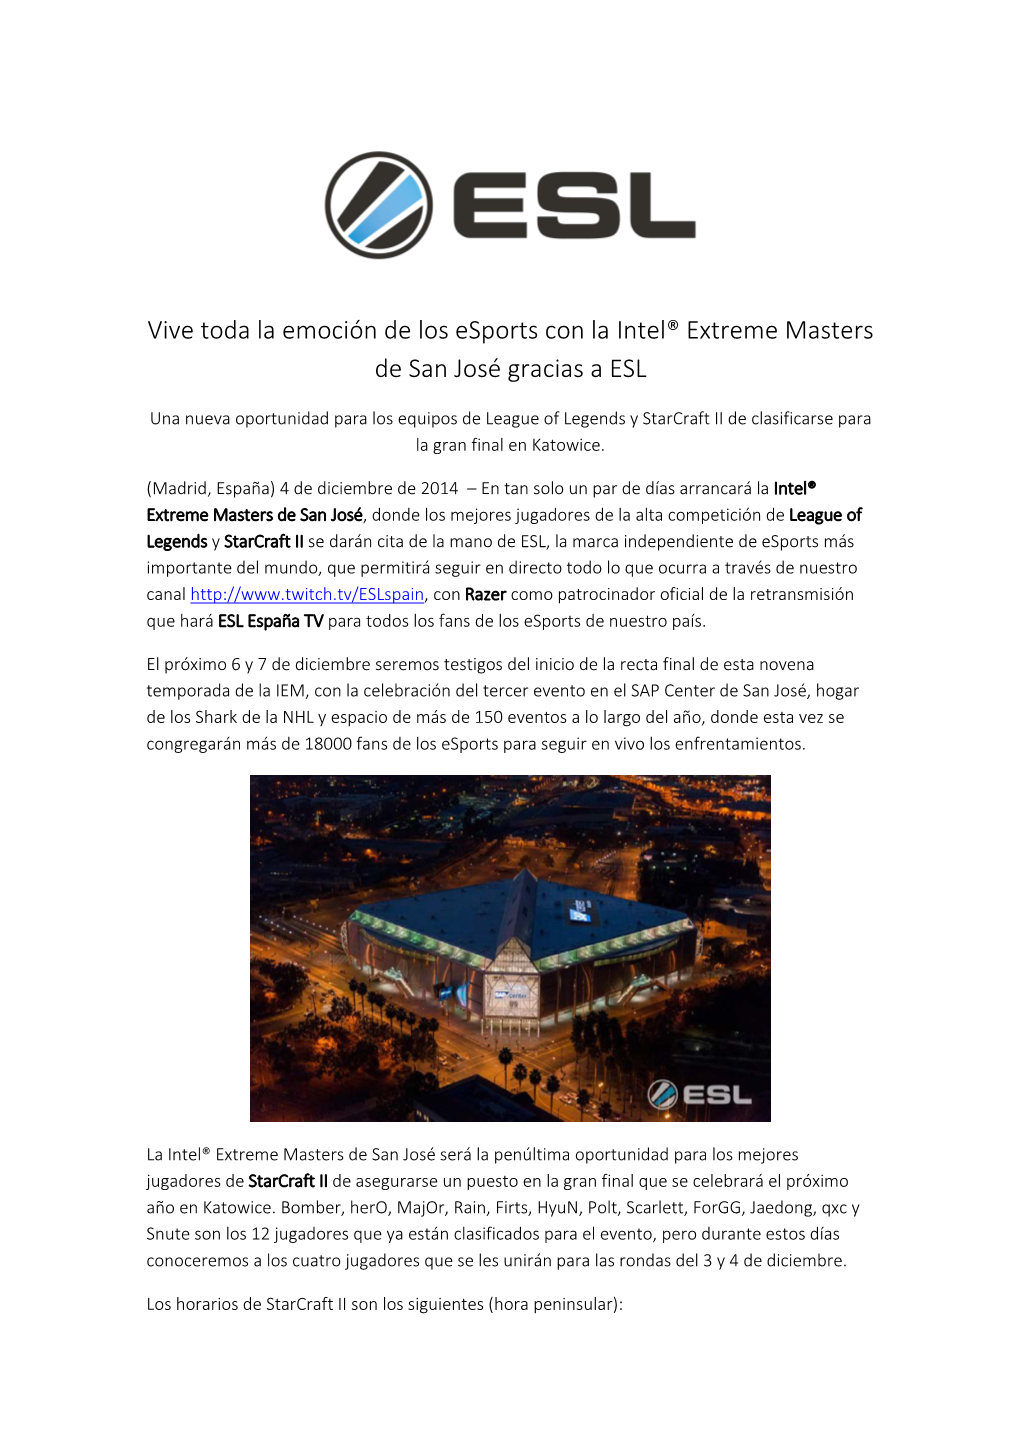 Vive Toda La Emoción De Los Esports Con La Intel® Extreme Masters De San José Gracias a ESL